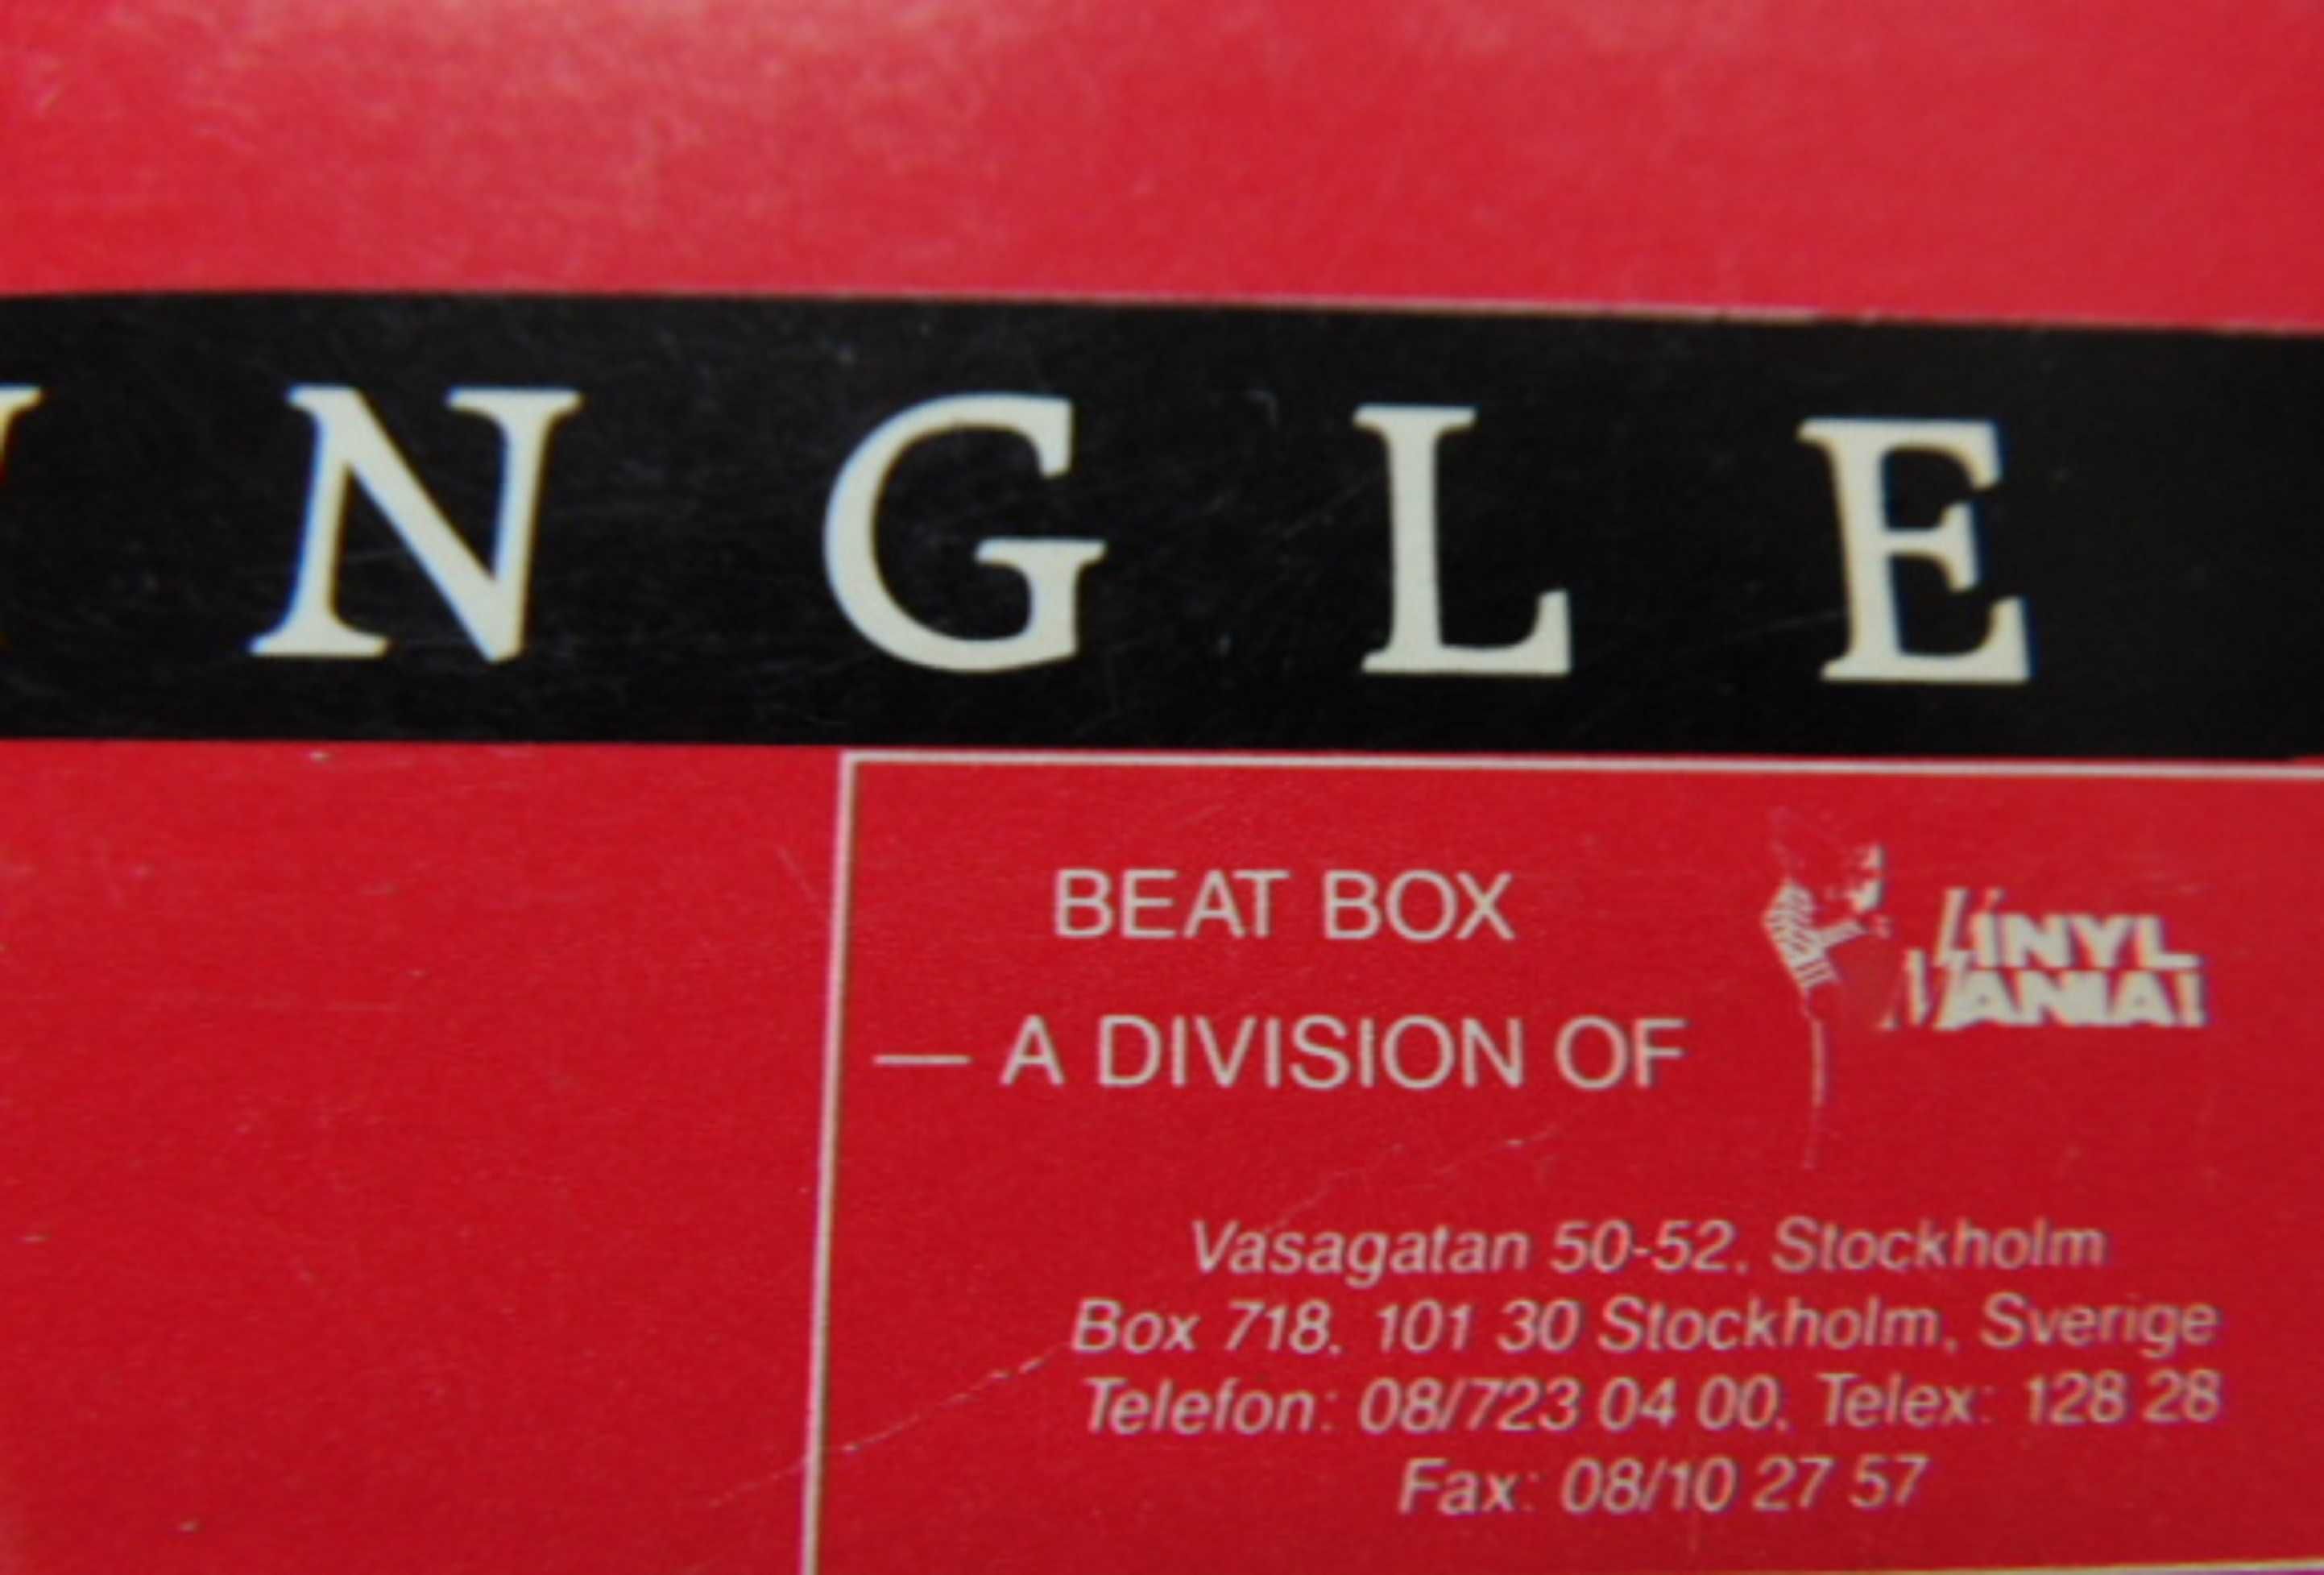 Płyta vinylowa Beat BOX.